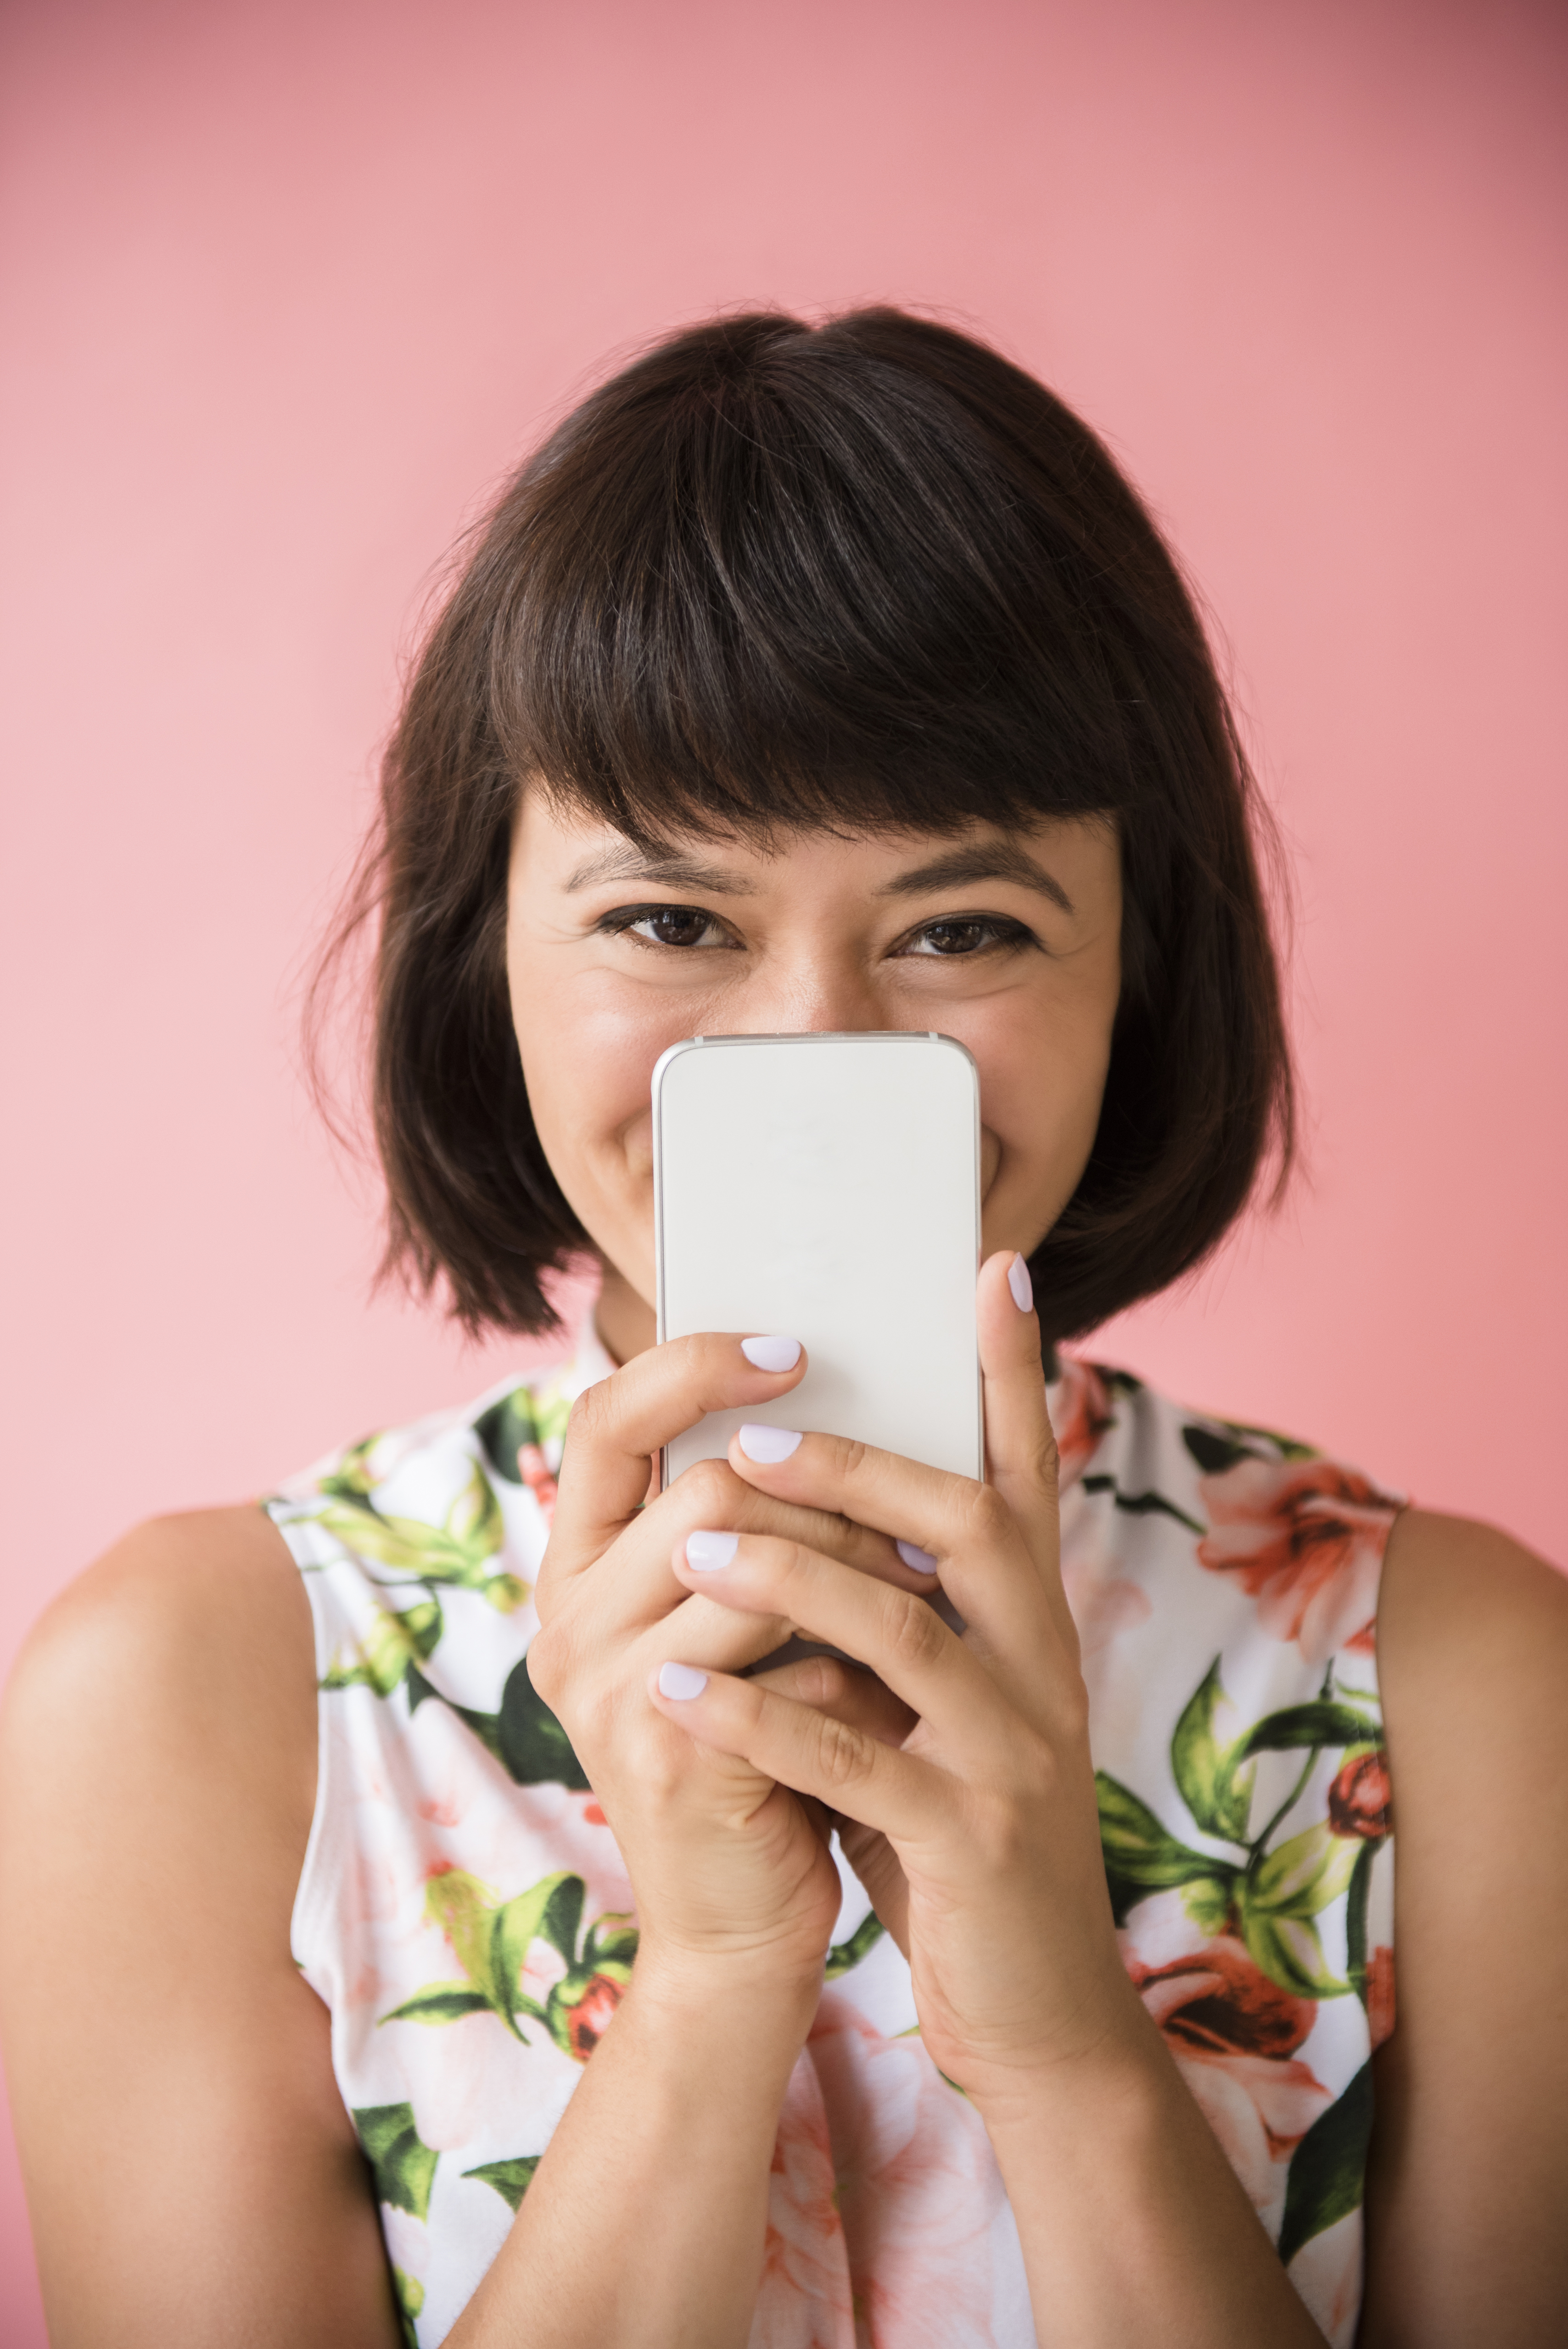 Femme hispanique cachant son visage derrière un téléphone portable | Source : Getty Images